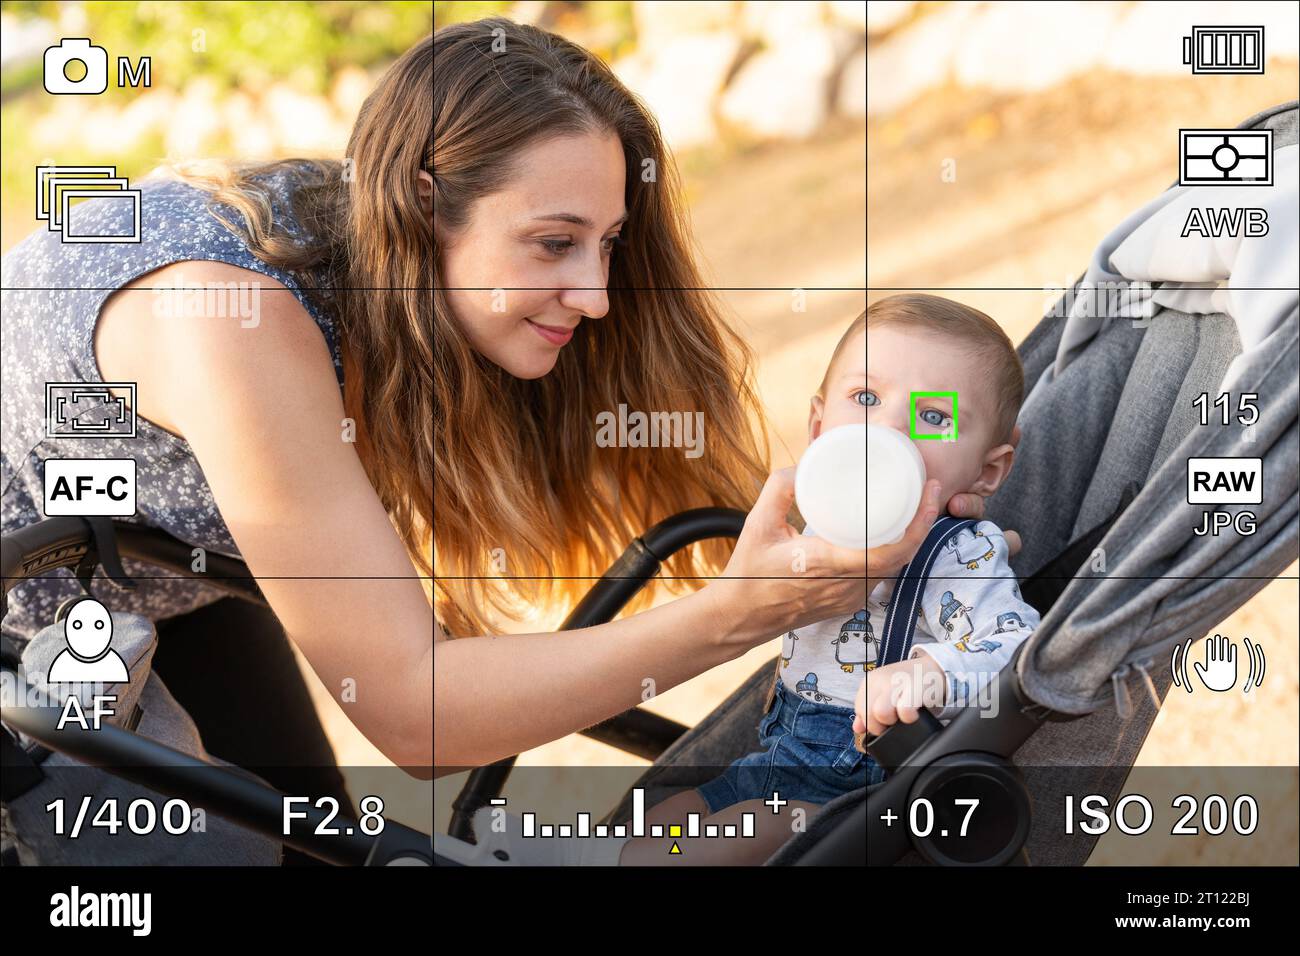 Bildschirm- oder Kamerasucher mit Autofokus für Augenerkennung Stockfoto